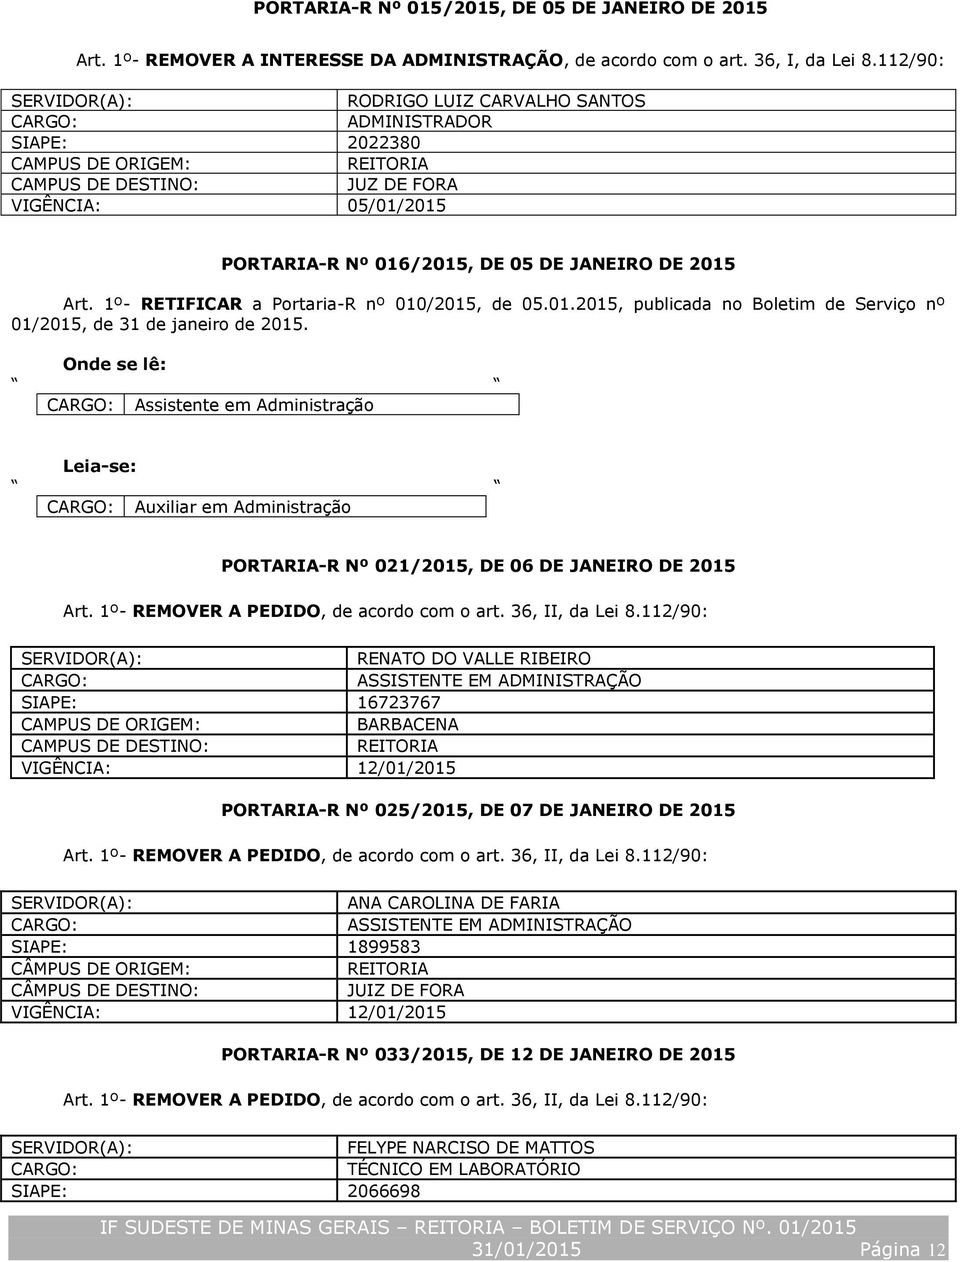 1º- RETIFICAR a Portaria-R nº 010/2015, de 05.01.2015, publicada no Boletim de Serviço nº 01/2015, de 31 de janeiro de 2015.